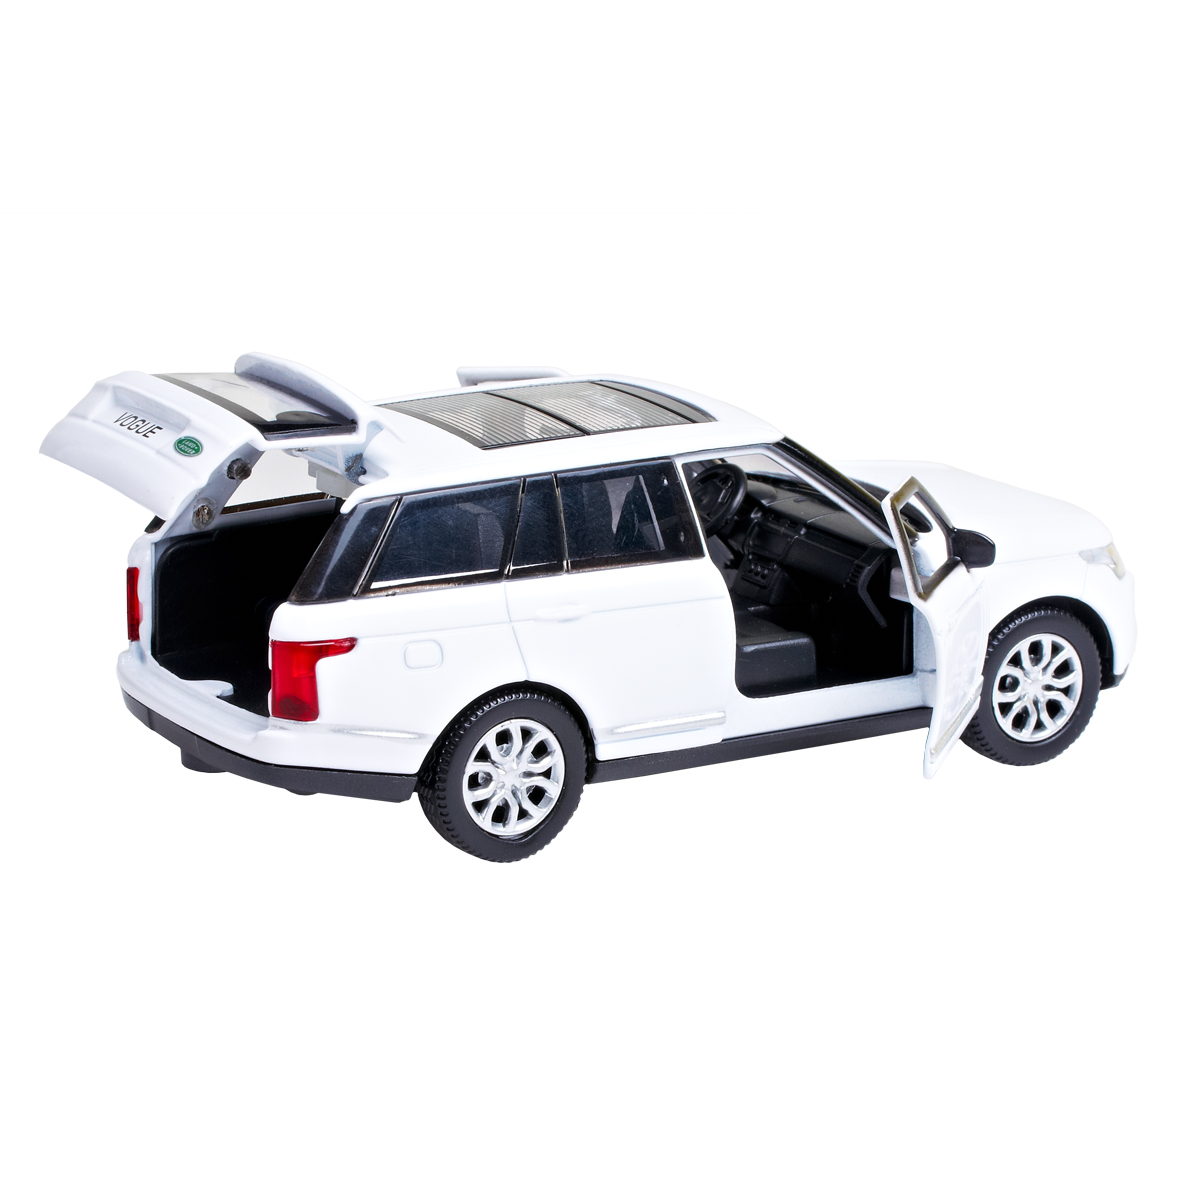 Автомодель Technopark Range Rover Vogue, 1:32, білий (VOGUE-WT) - фото 4